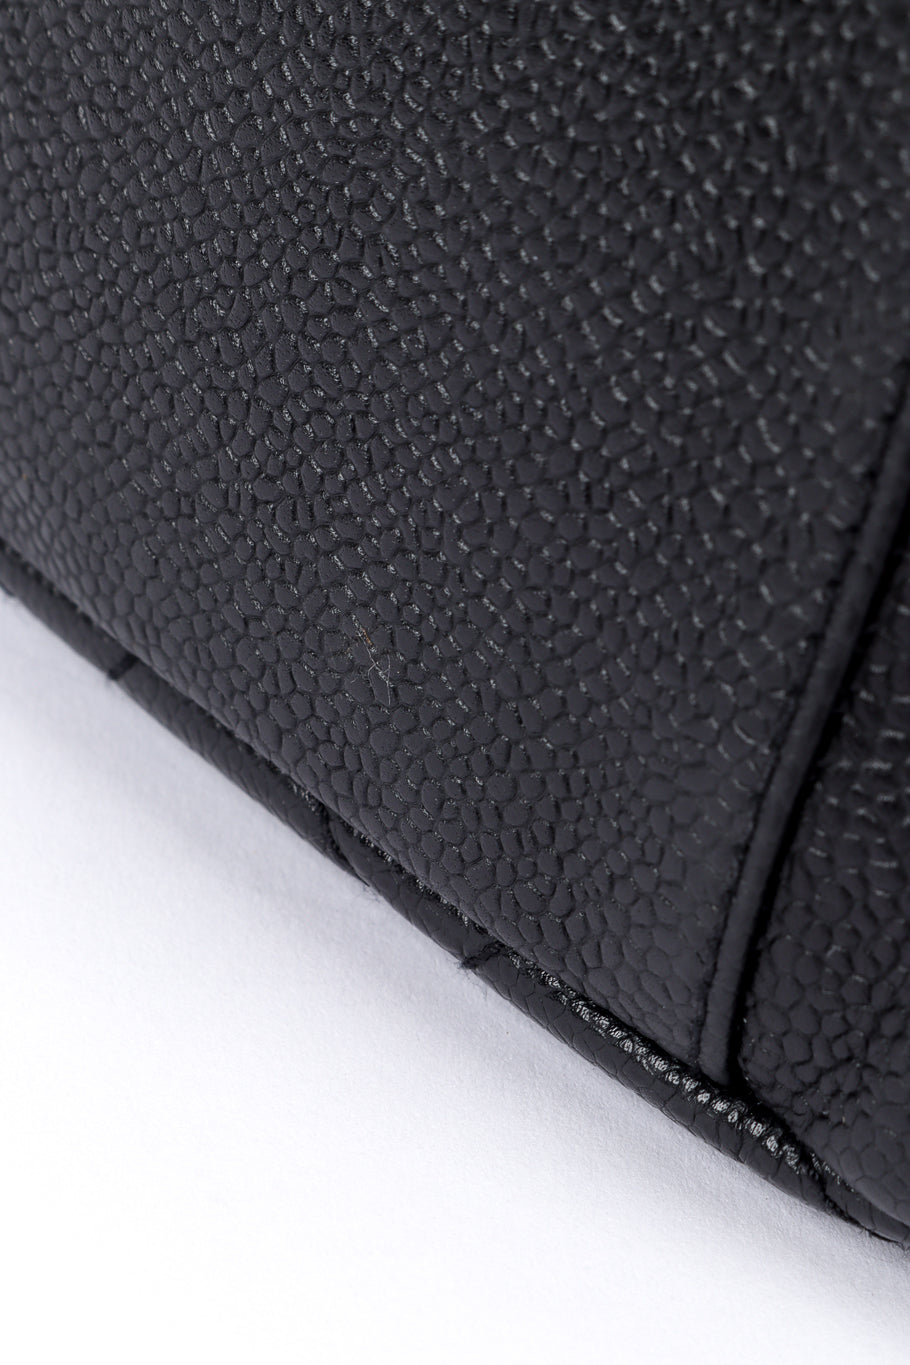 Chanel Quilted CC Shoulder Bag caviar leather closeup @recess la